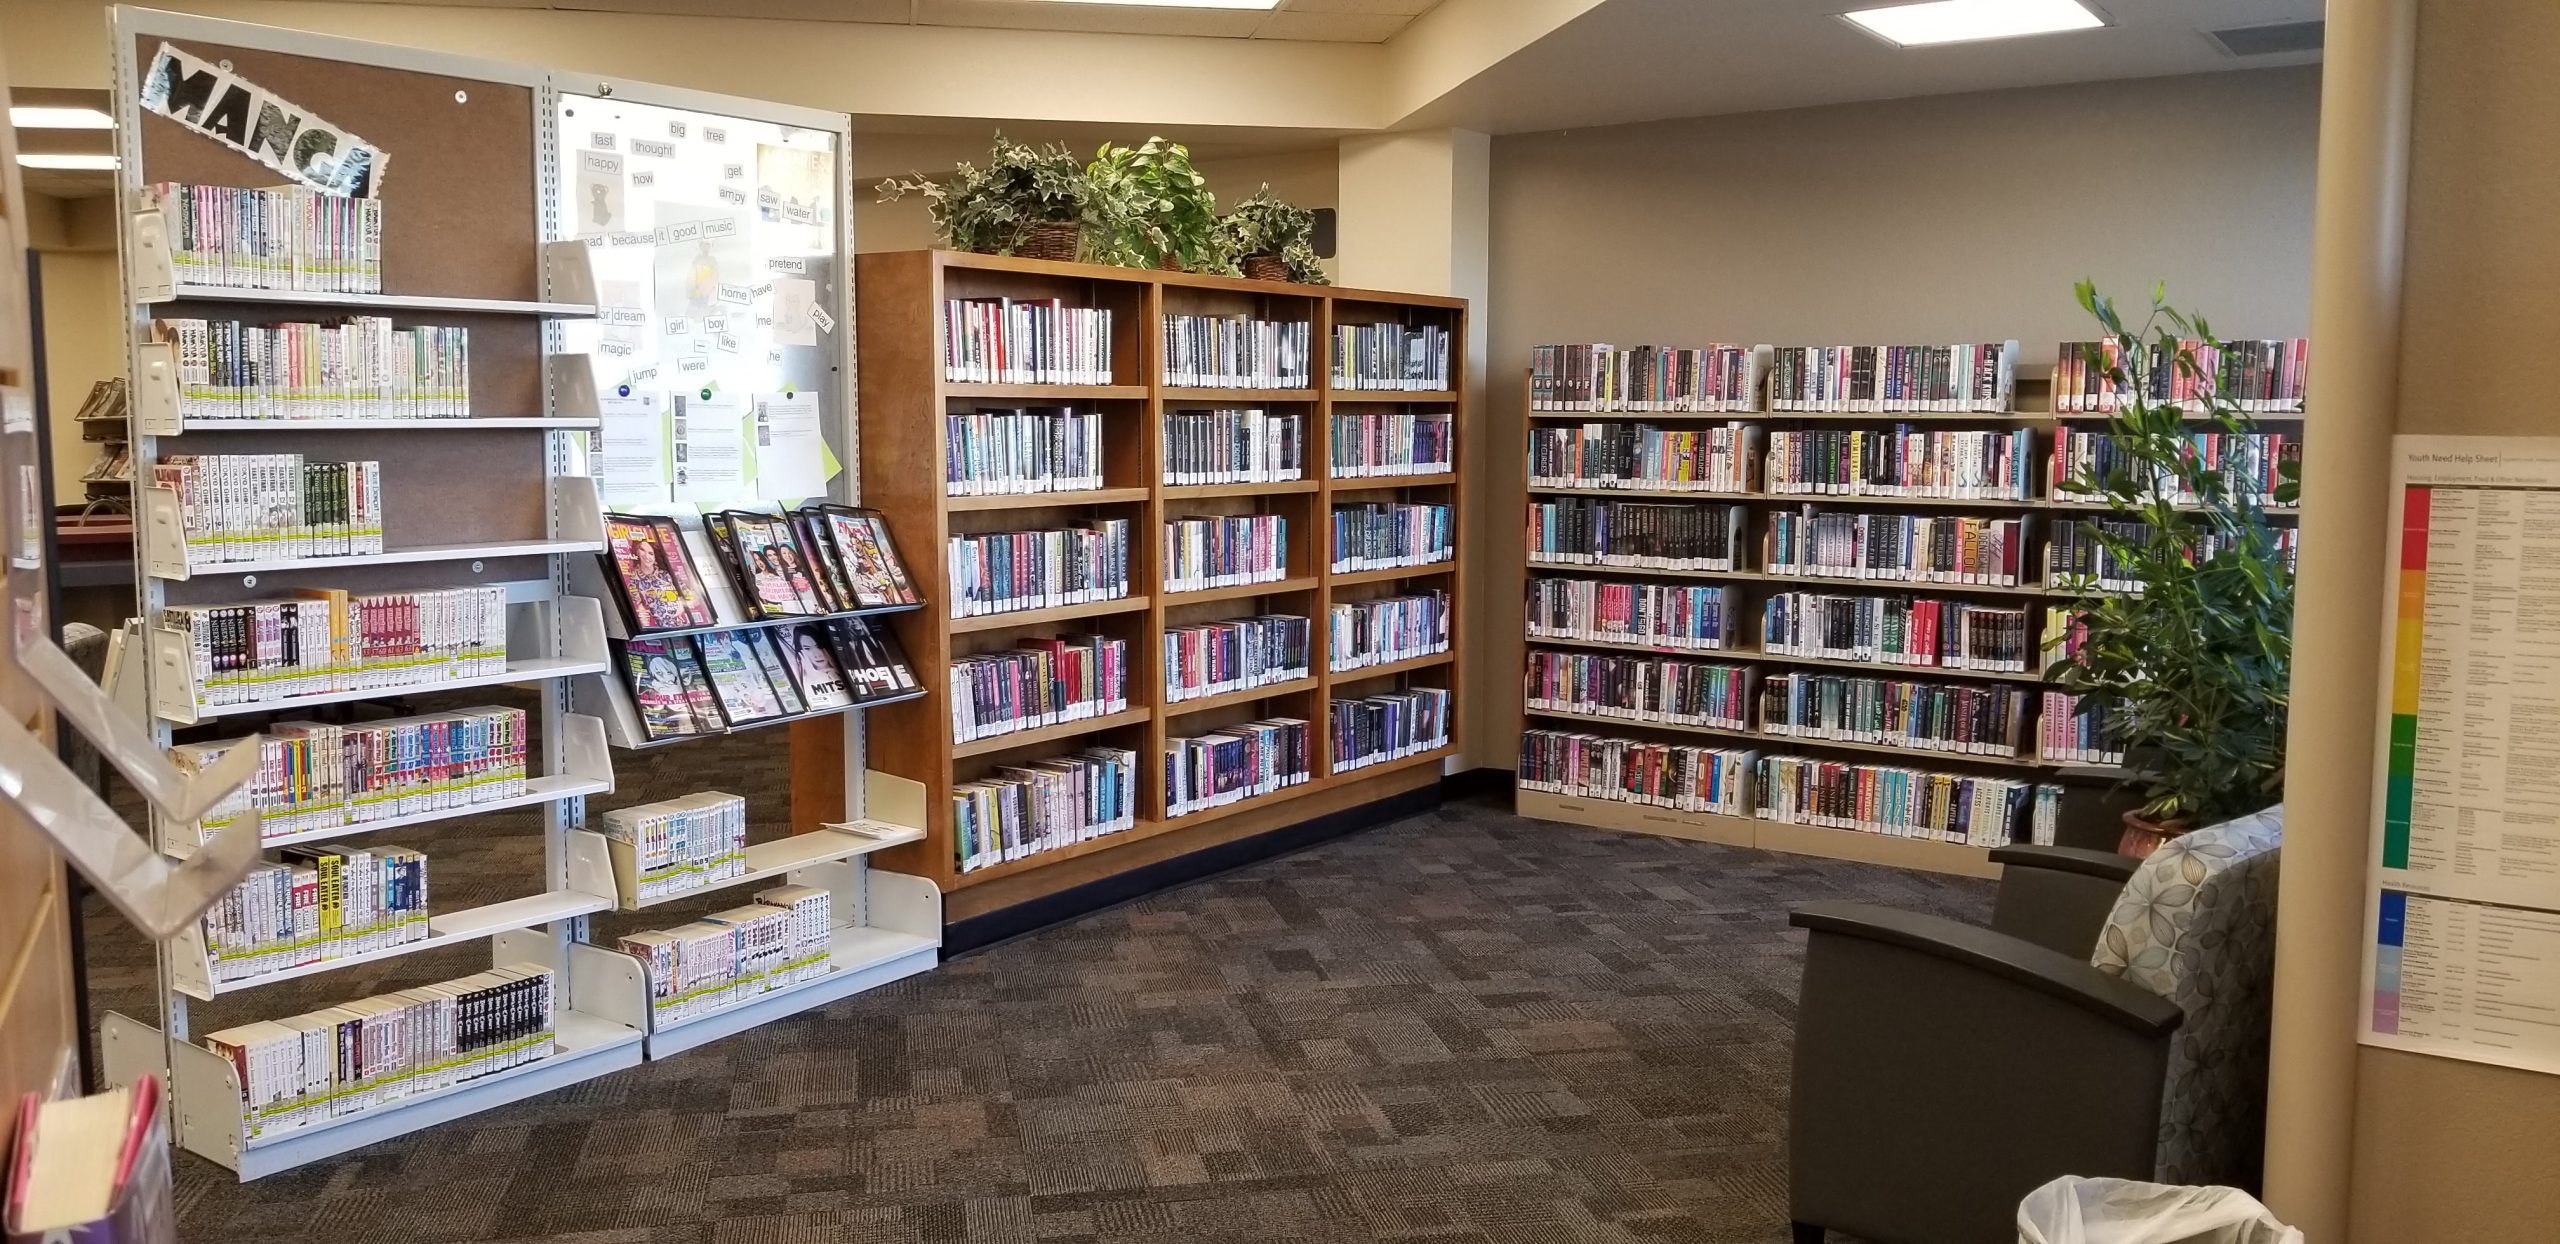 Nanini Library teen area